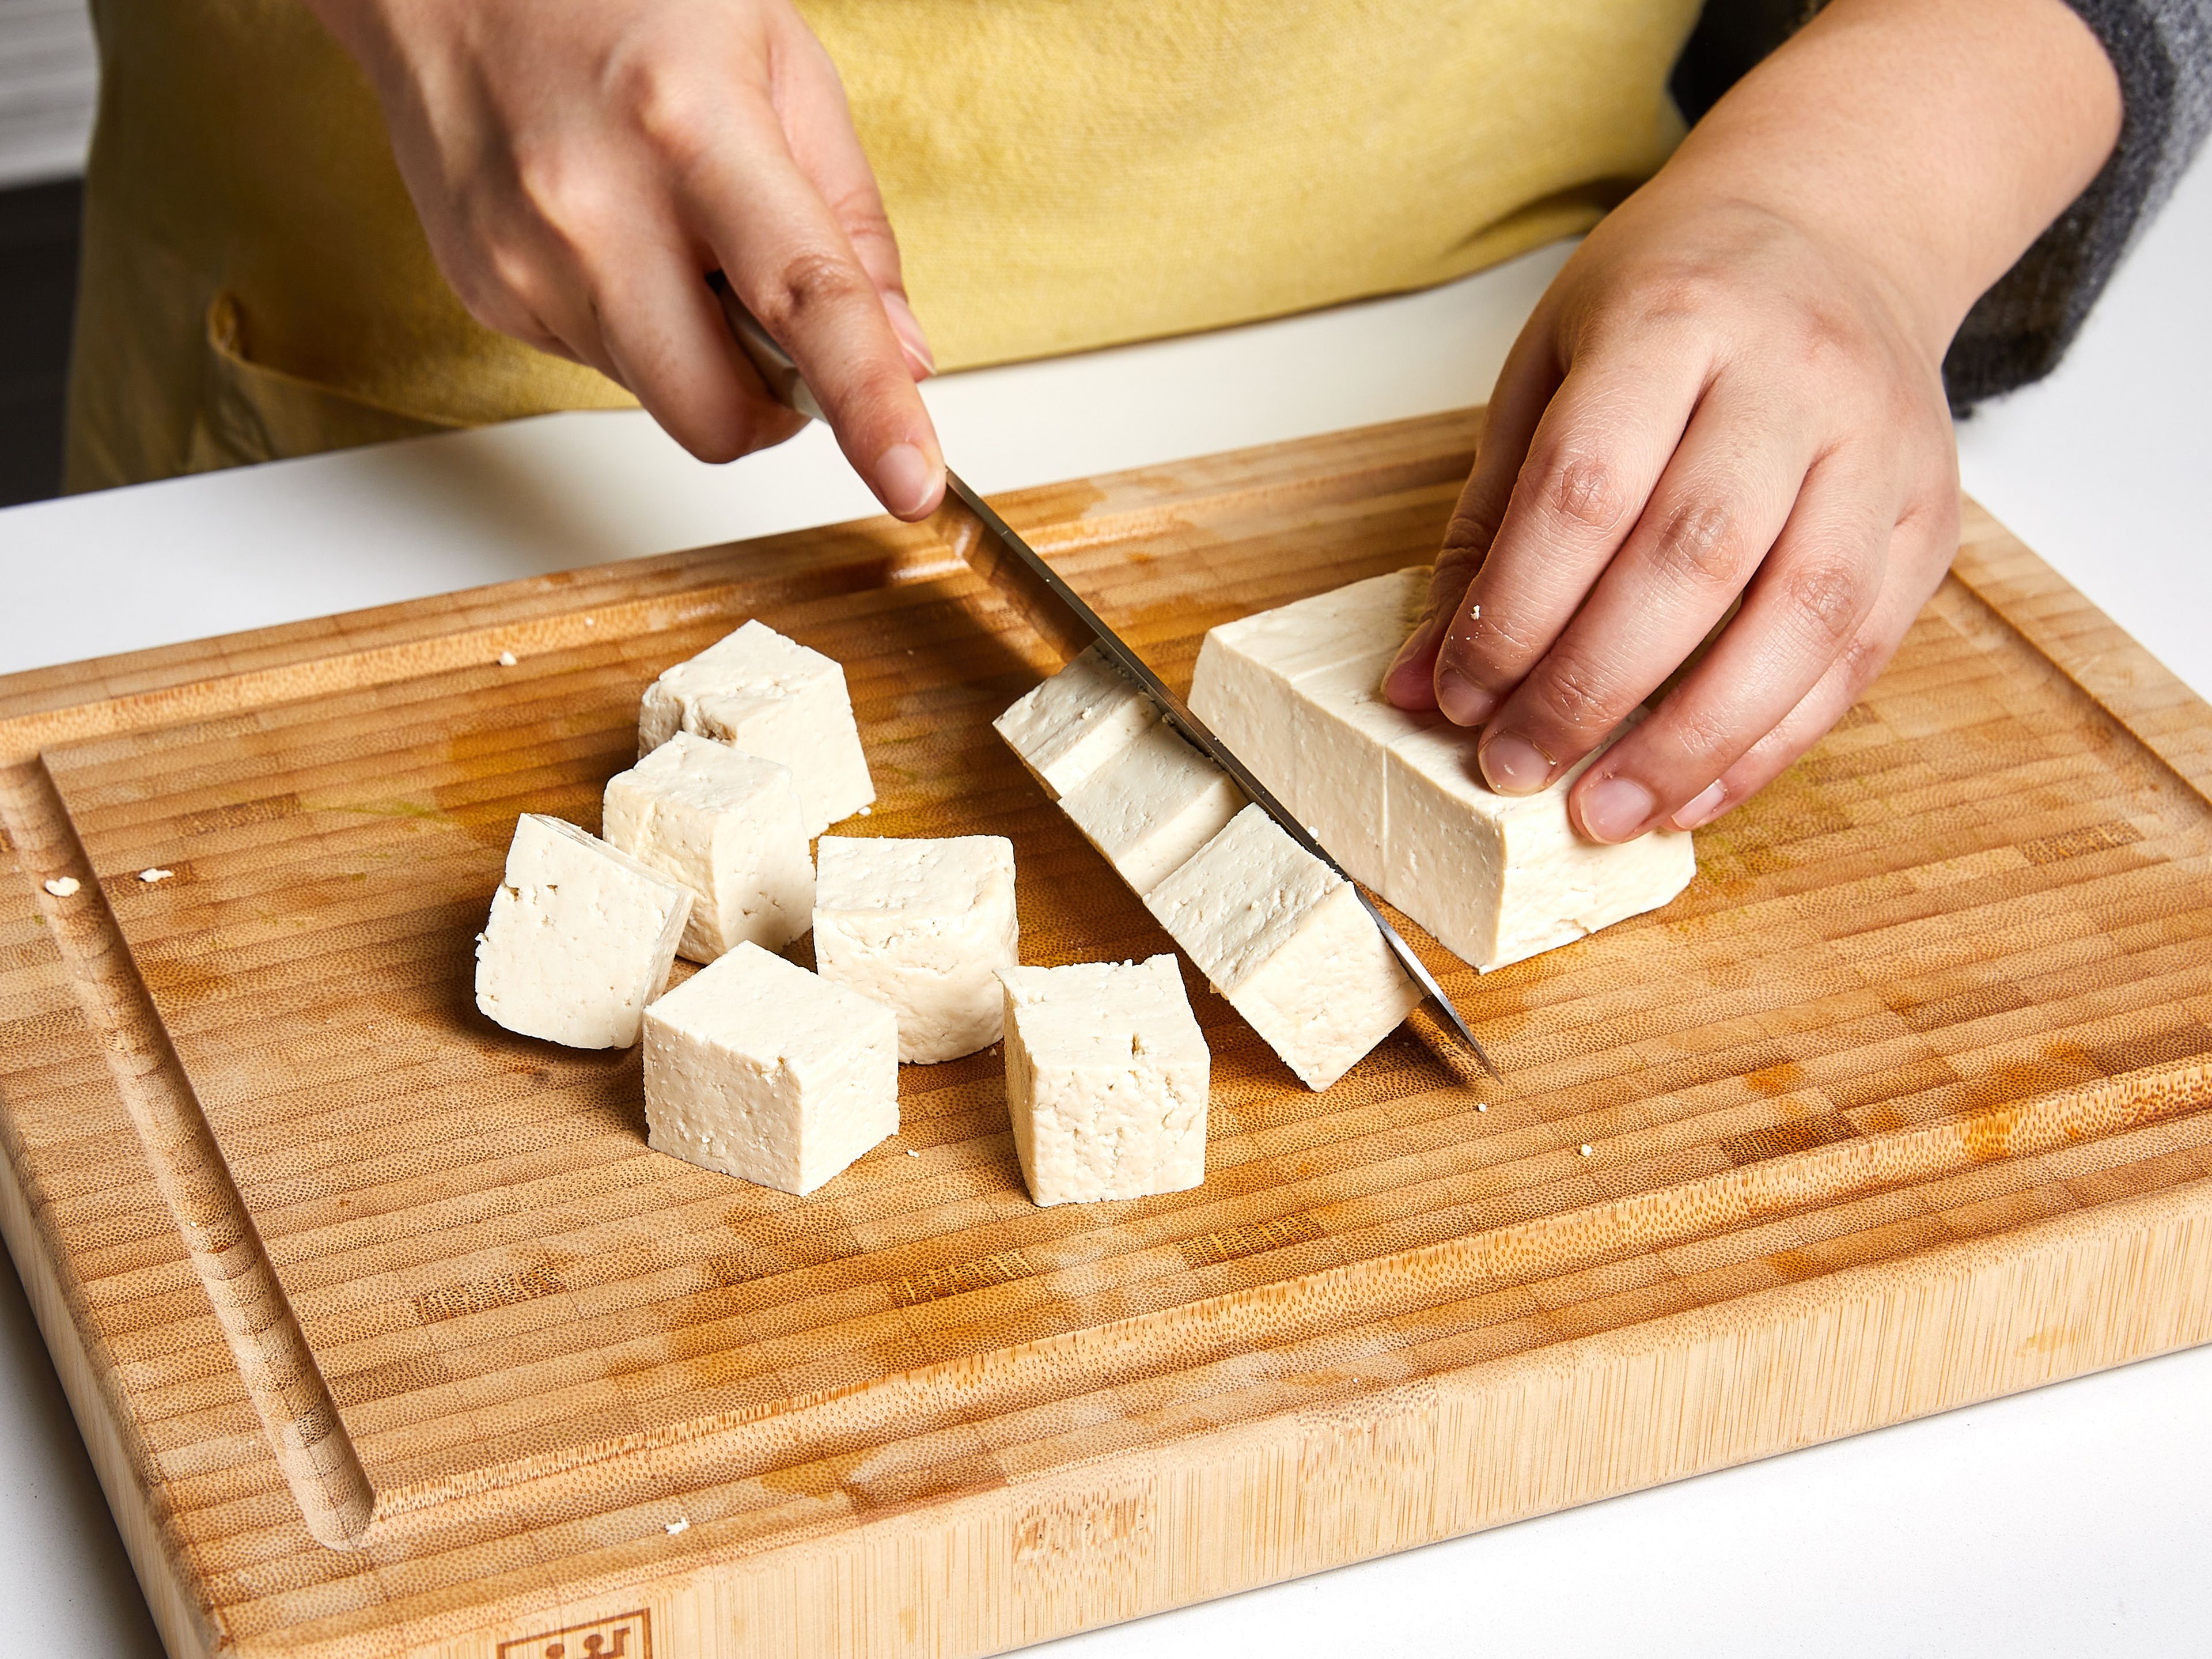 Tofu aus der Verpackung nehmen und abtropfen lassen. Den Tofu auf einem Teller mit Küchenpapier umwickeln. Einen schweren Gegenstand (eine Bratpfanne oder ein Backblech) darauf legen, um das Wasser herauszupressen. Ca. 20 Min. stehen lassen. In der Zwischenzeit grüne Bohnen von den Enden befreien und halbieren, Champignons vierteln. Schalotte in dünne Scheiben schneiden, Knoblauch und Ingwer fein hacken. Wenn der Tofu fertig ist, das Küchentuch entsorgen und den Tofu in ca. 2–3 cm große Würfel schneiden.